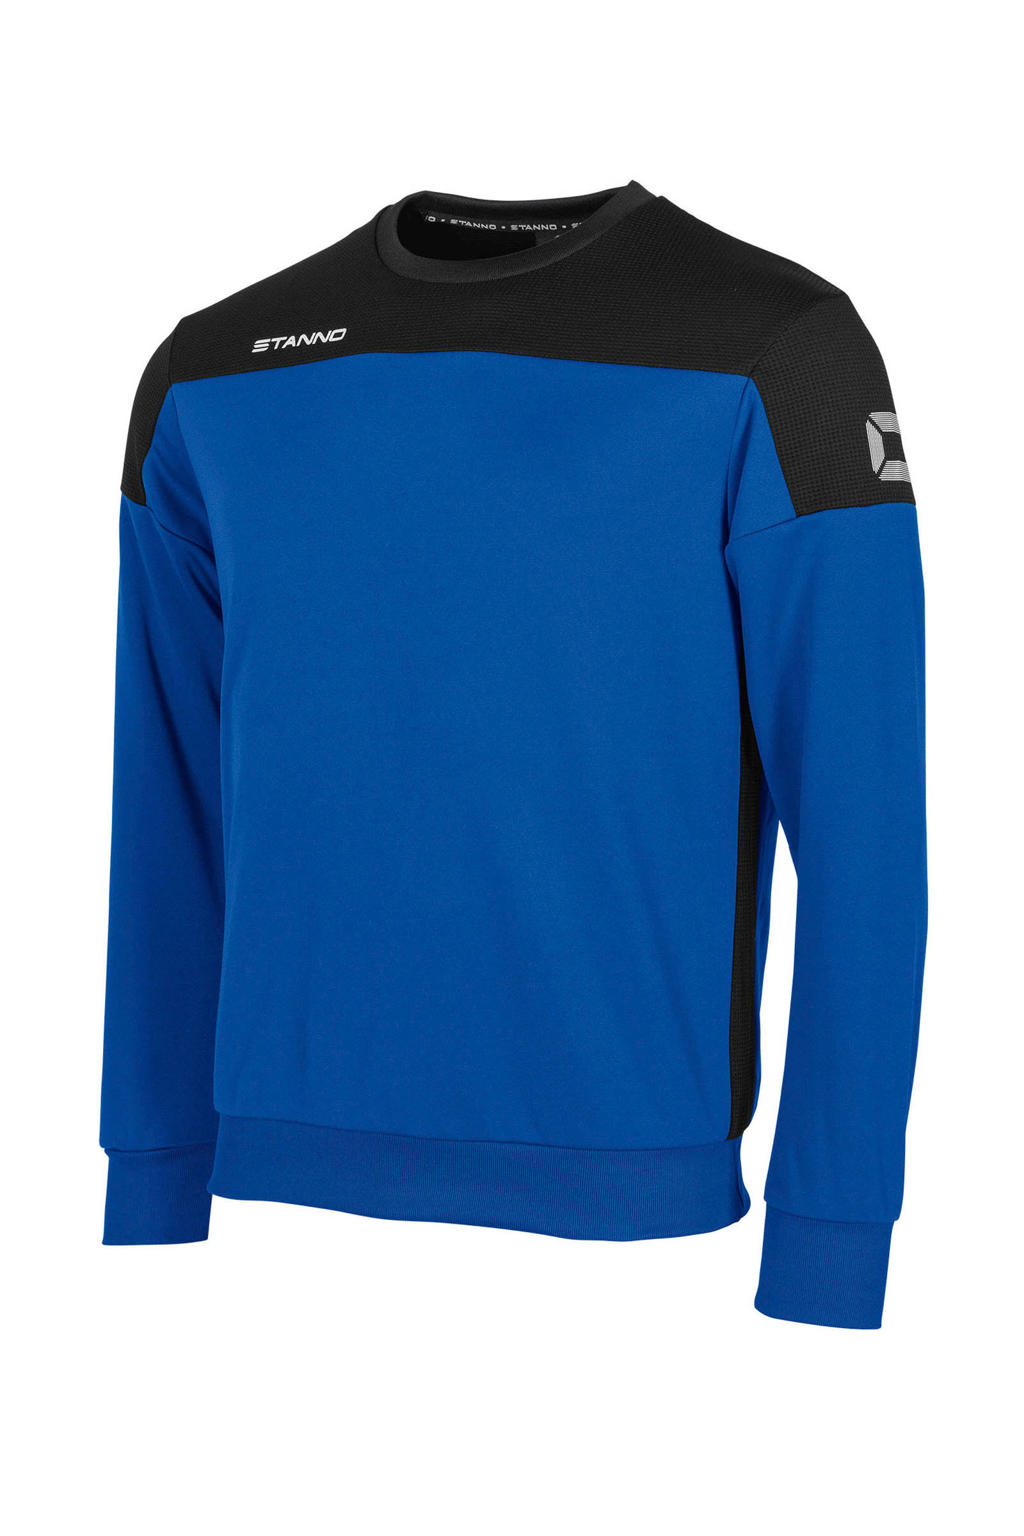 Blauw en zwarte heren Stanno voetbalsweater van polyester met lange mouwen en ronde hals